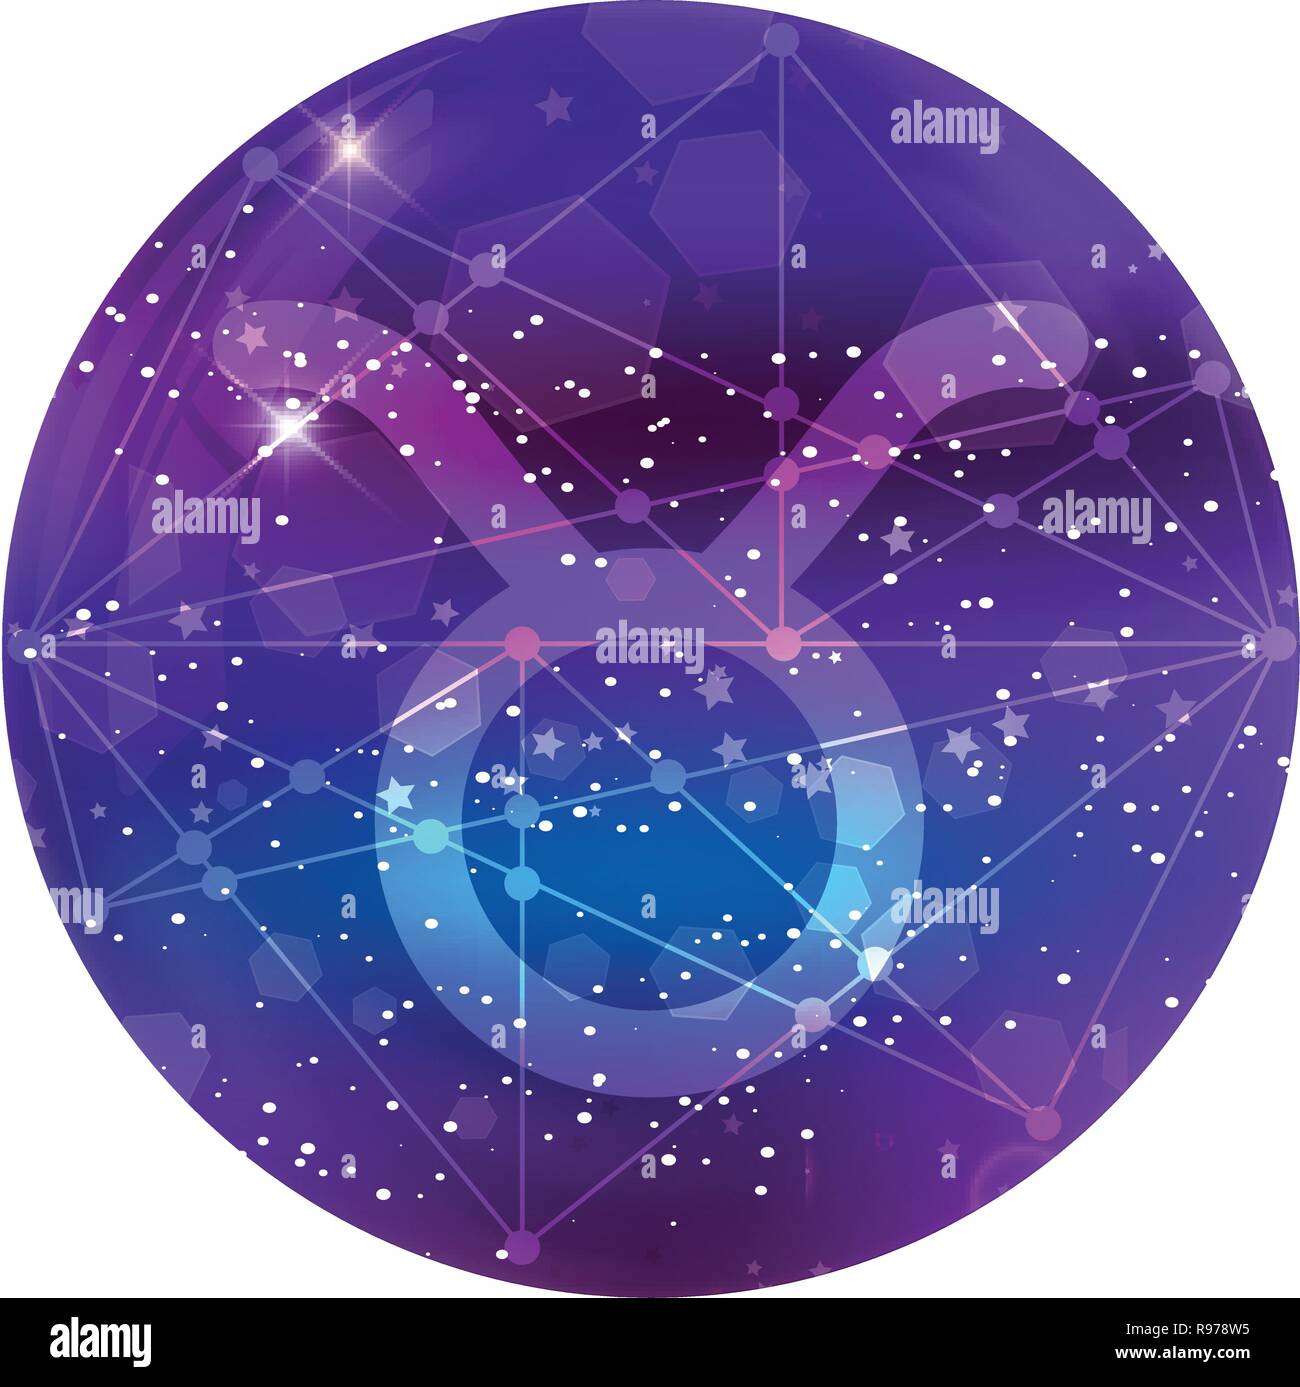 Toro segno zodiacale e costellazione sul cosmica cielo viola con stelle luccicanti e nebula isolati su sfondo bianco. Vettore icona al neon, pulsante WEB, Illustrazione Vettoriale